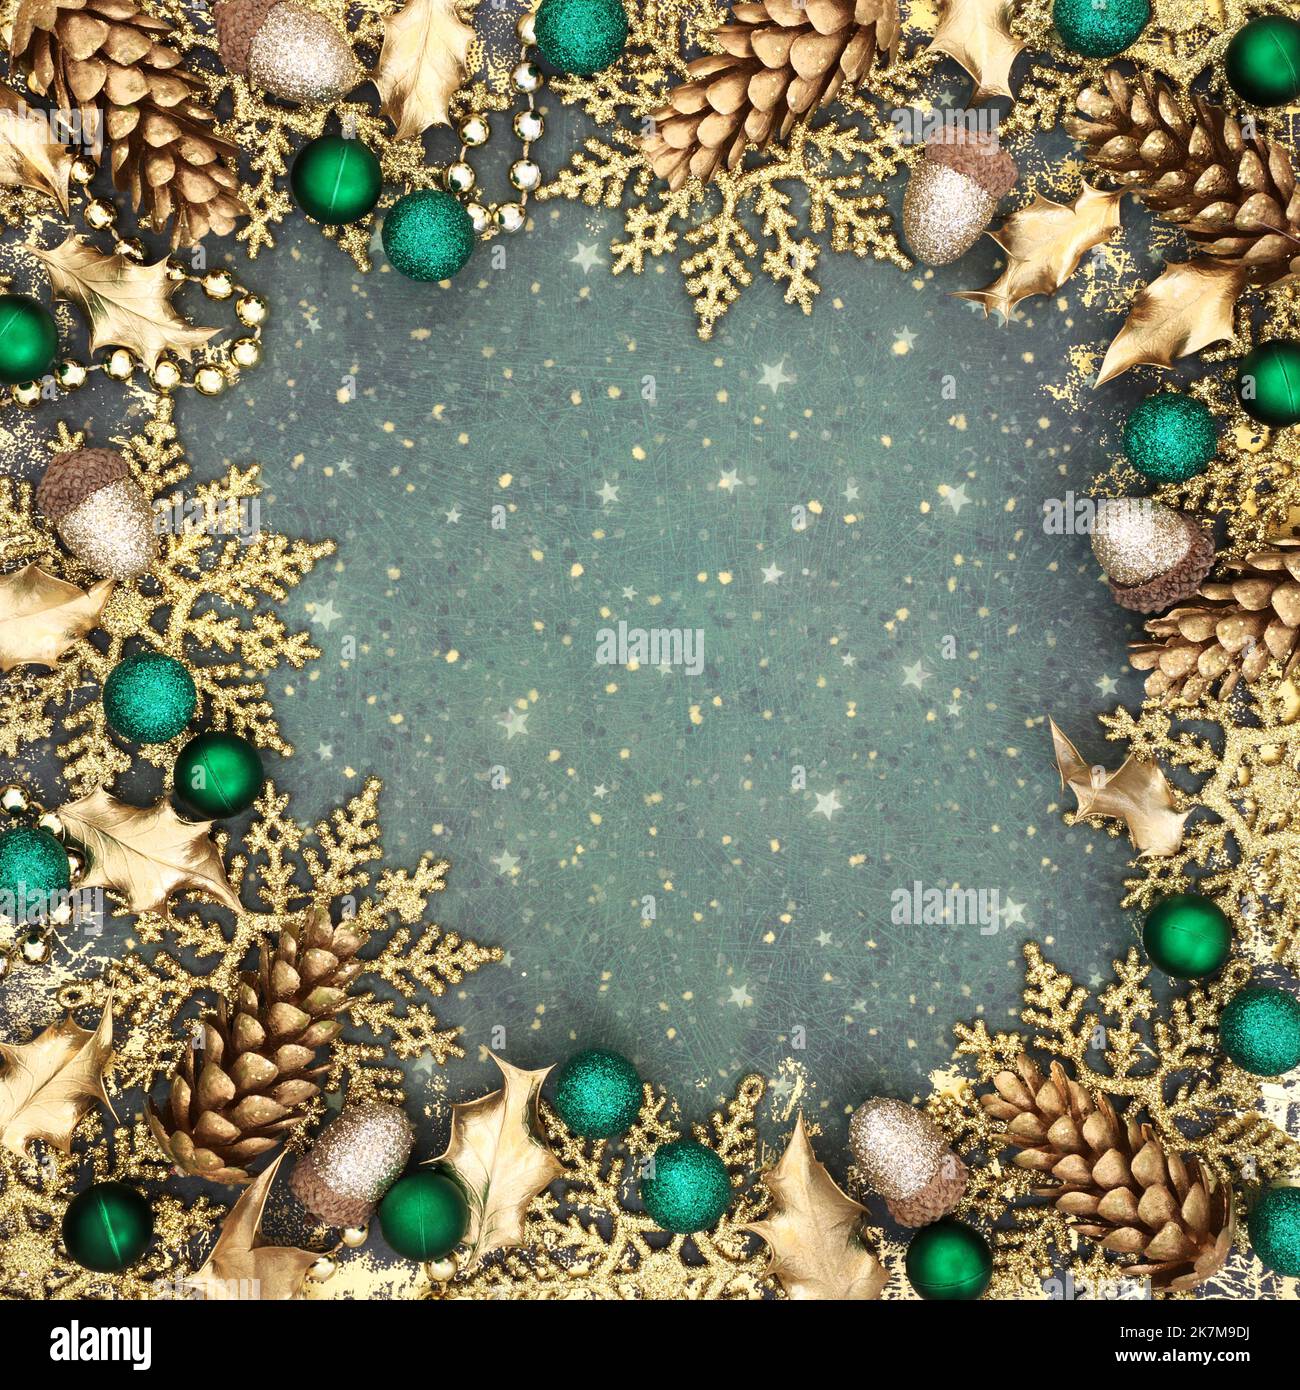 Motif flocon de neige doré de Noël sur fond de grunge avec décorations de sapin étincelantes pour les fêtes de fin d'année. Banque D'Images